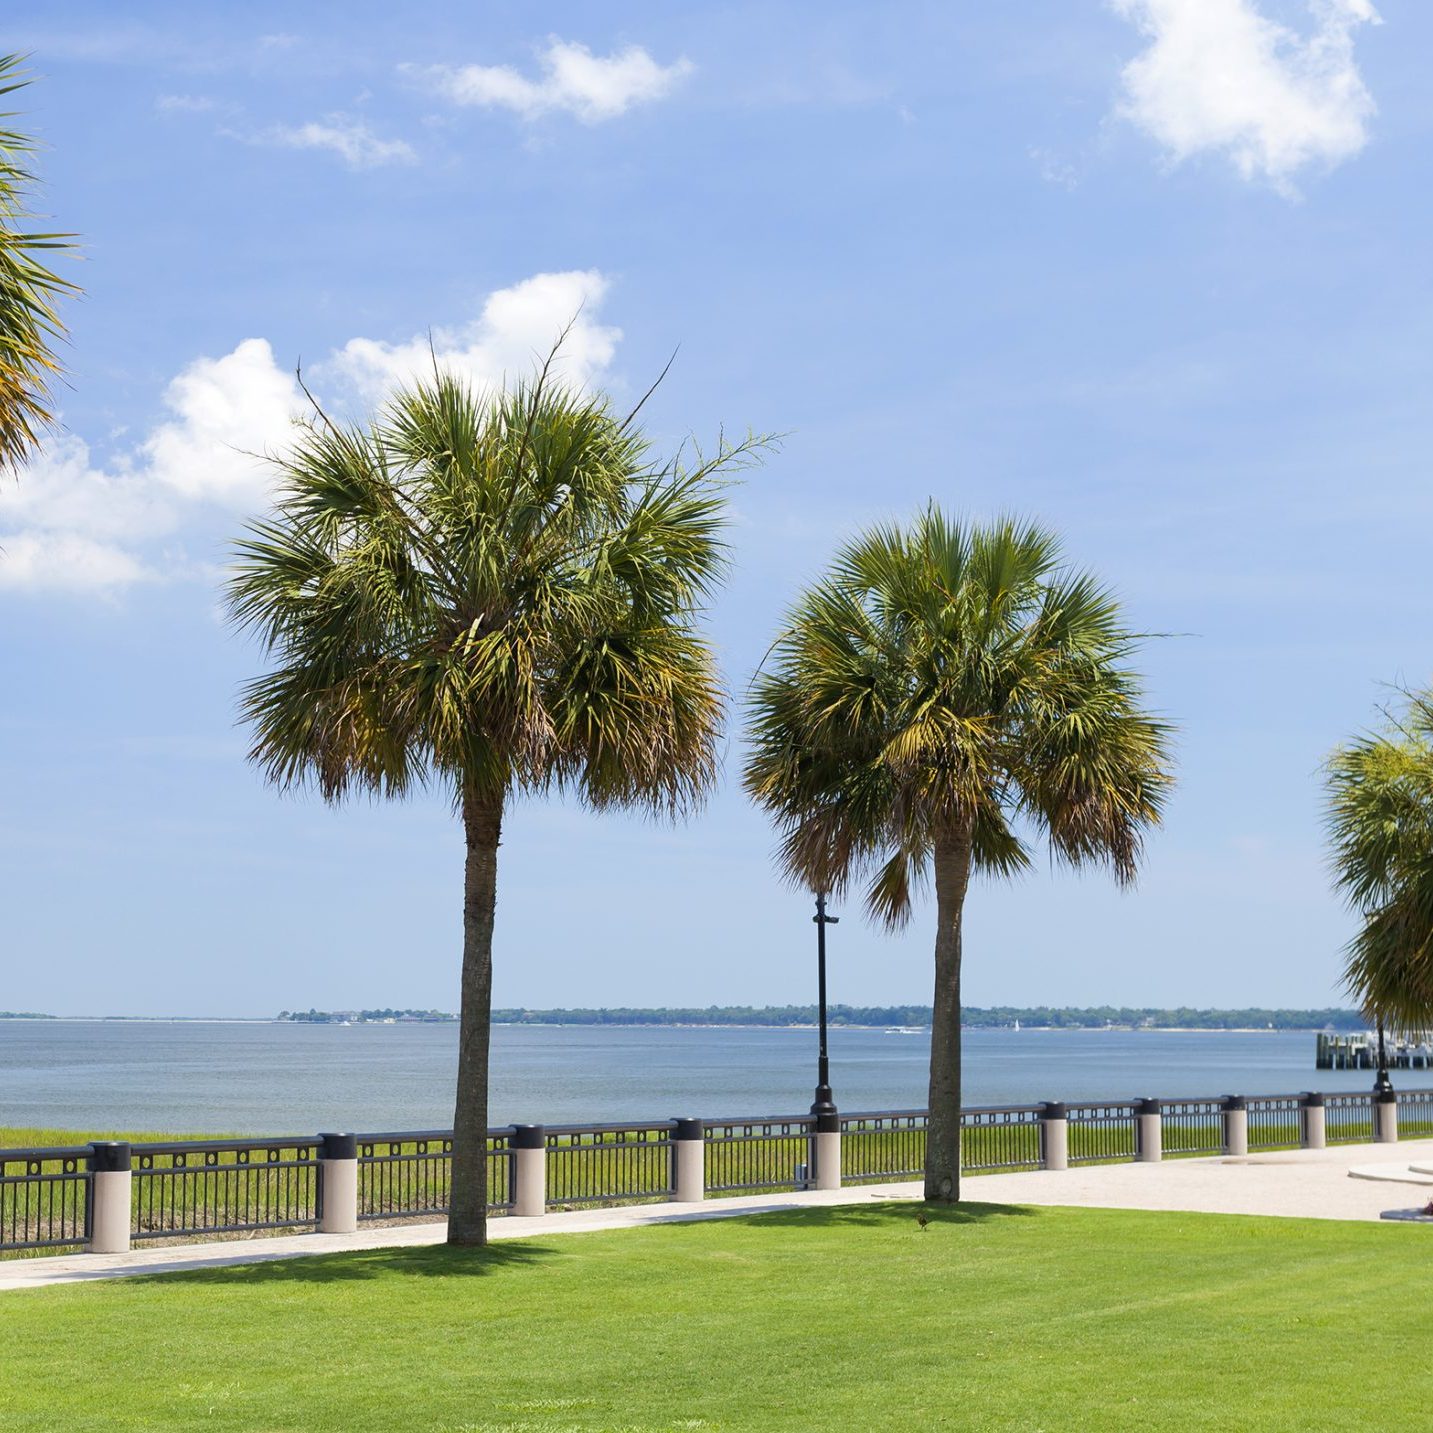 Sabal palm trees on the Carolina coast